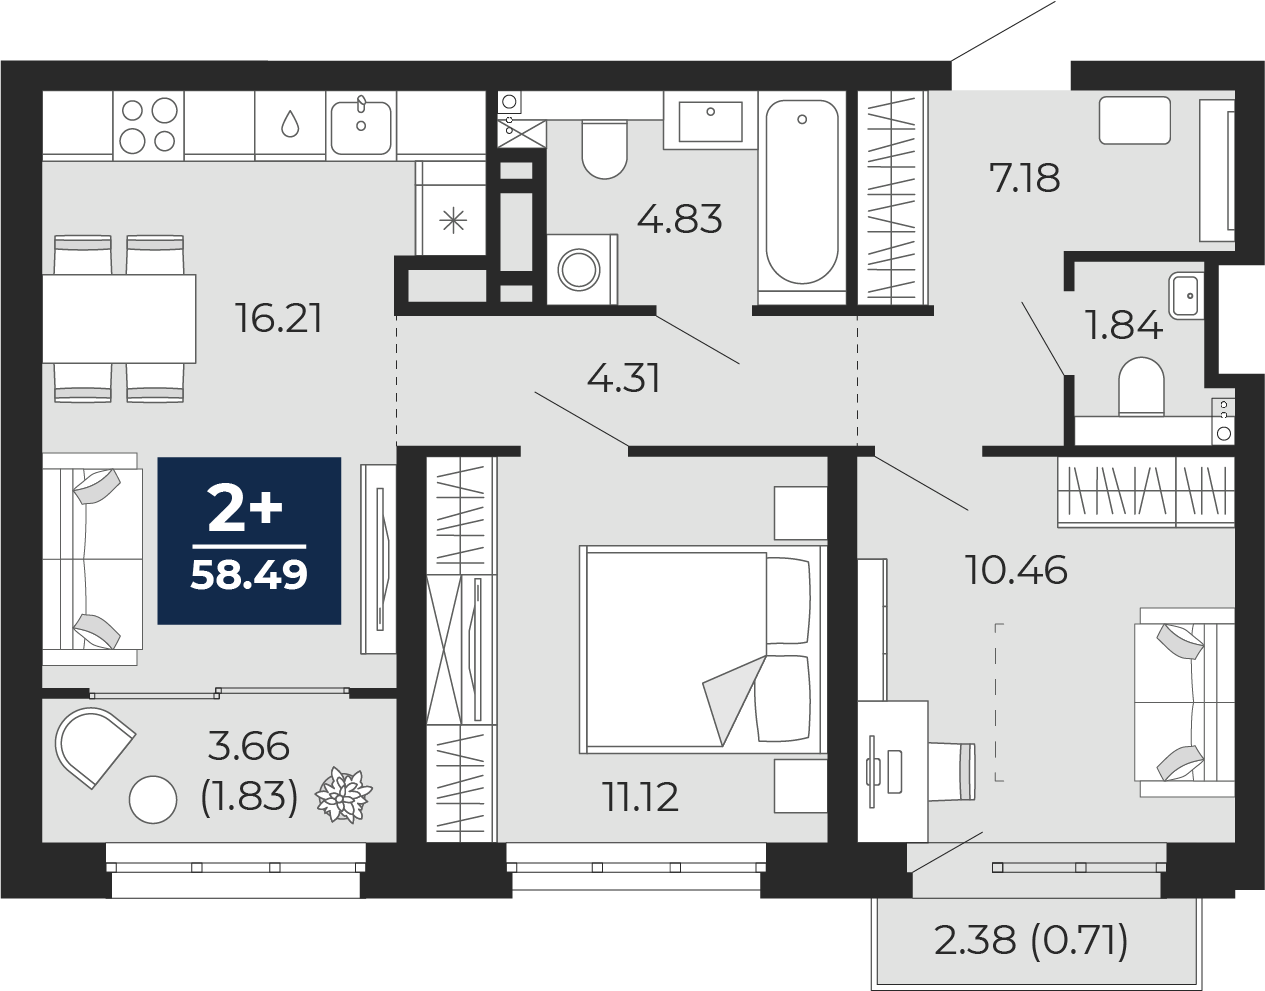 Квартира № 372, 2-комнатная, 58.49 кв. м, 5 этаж